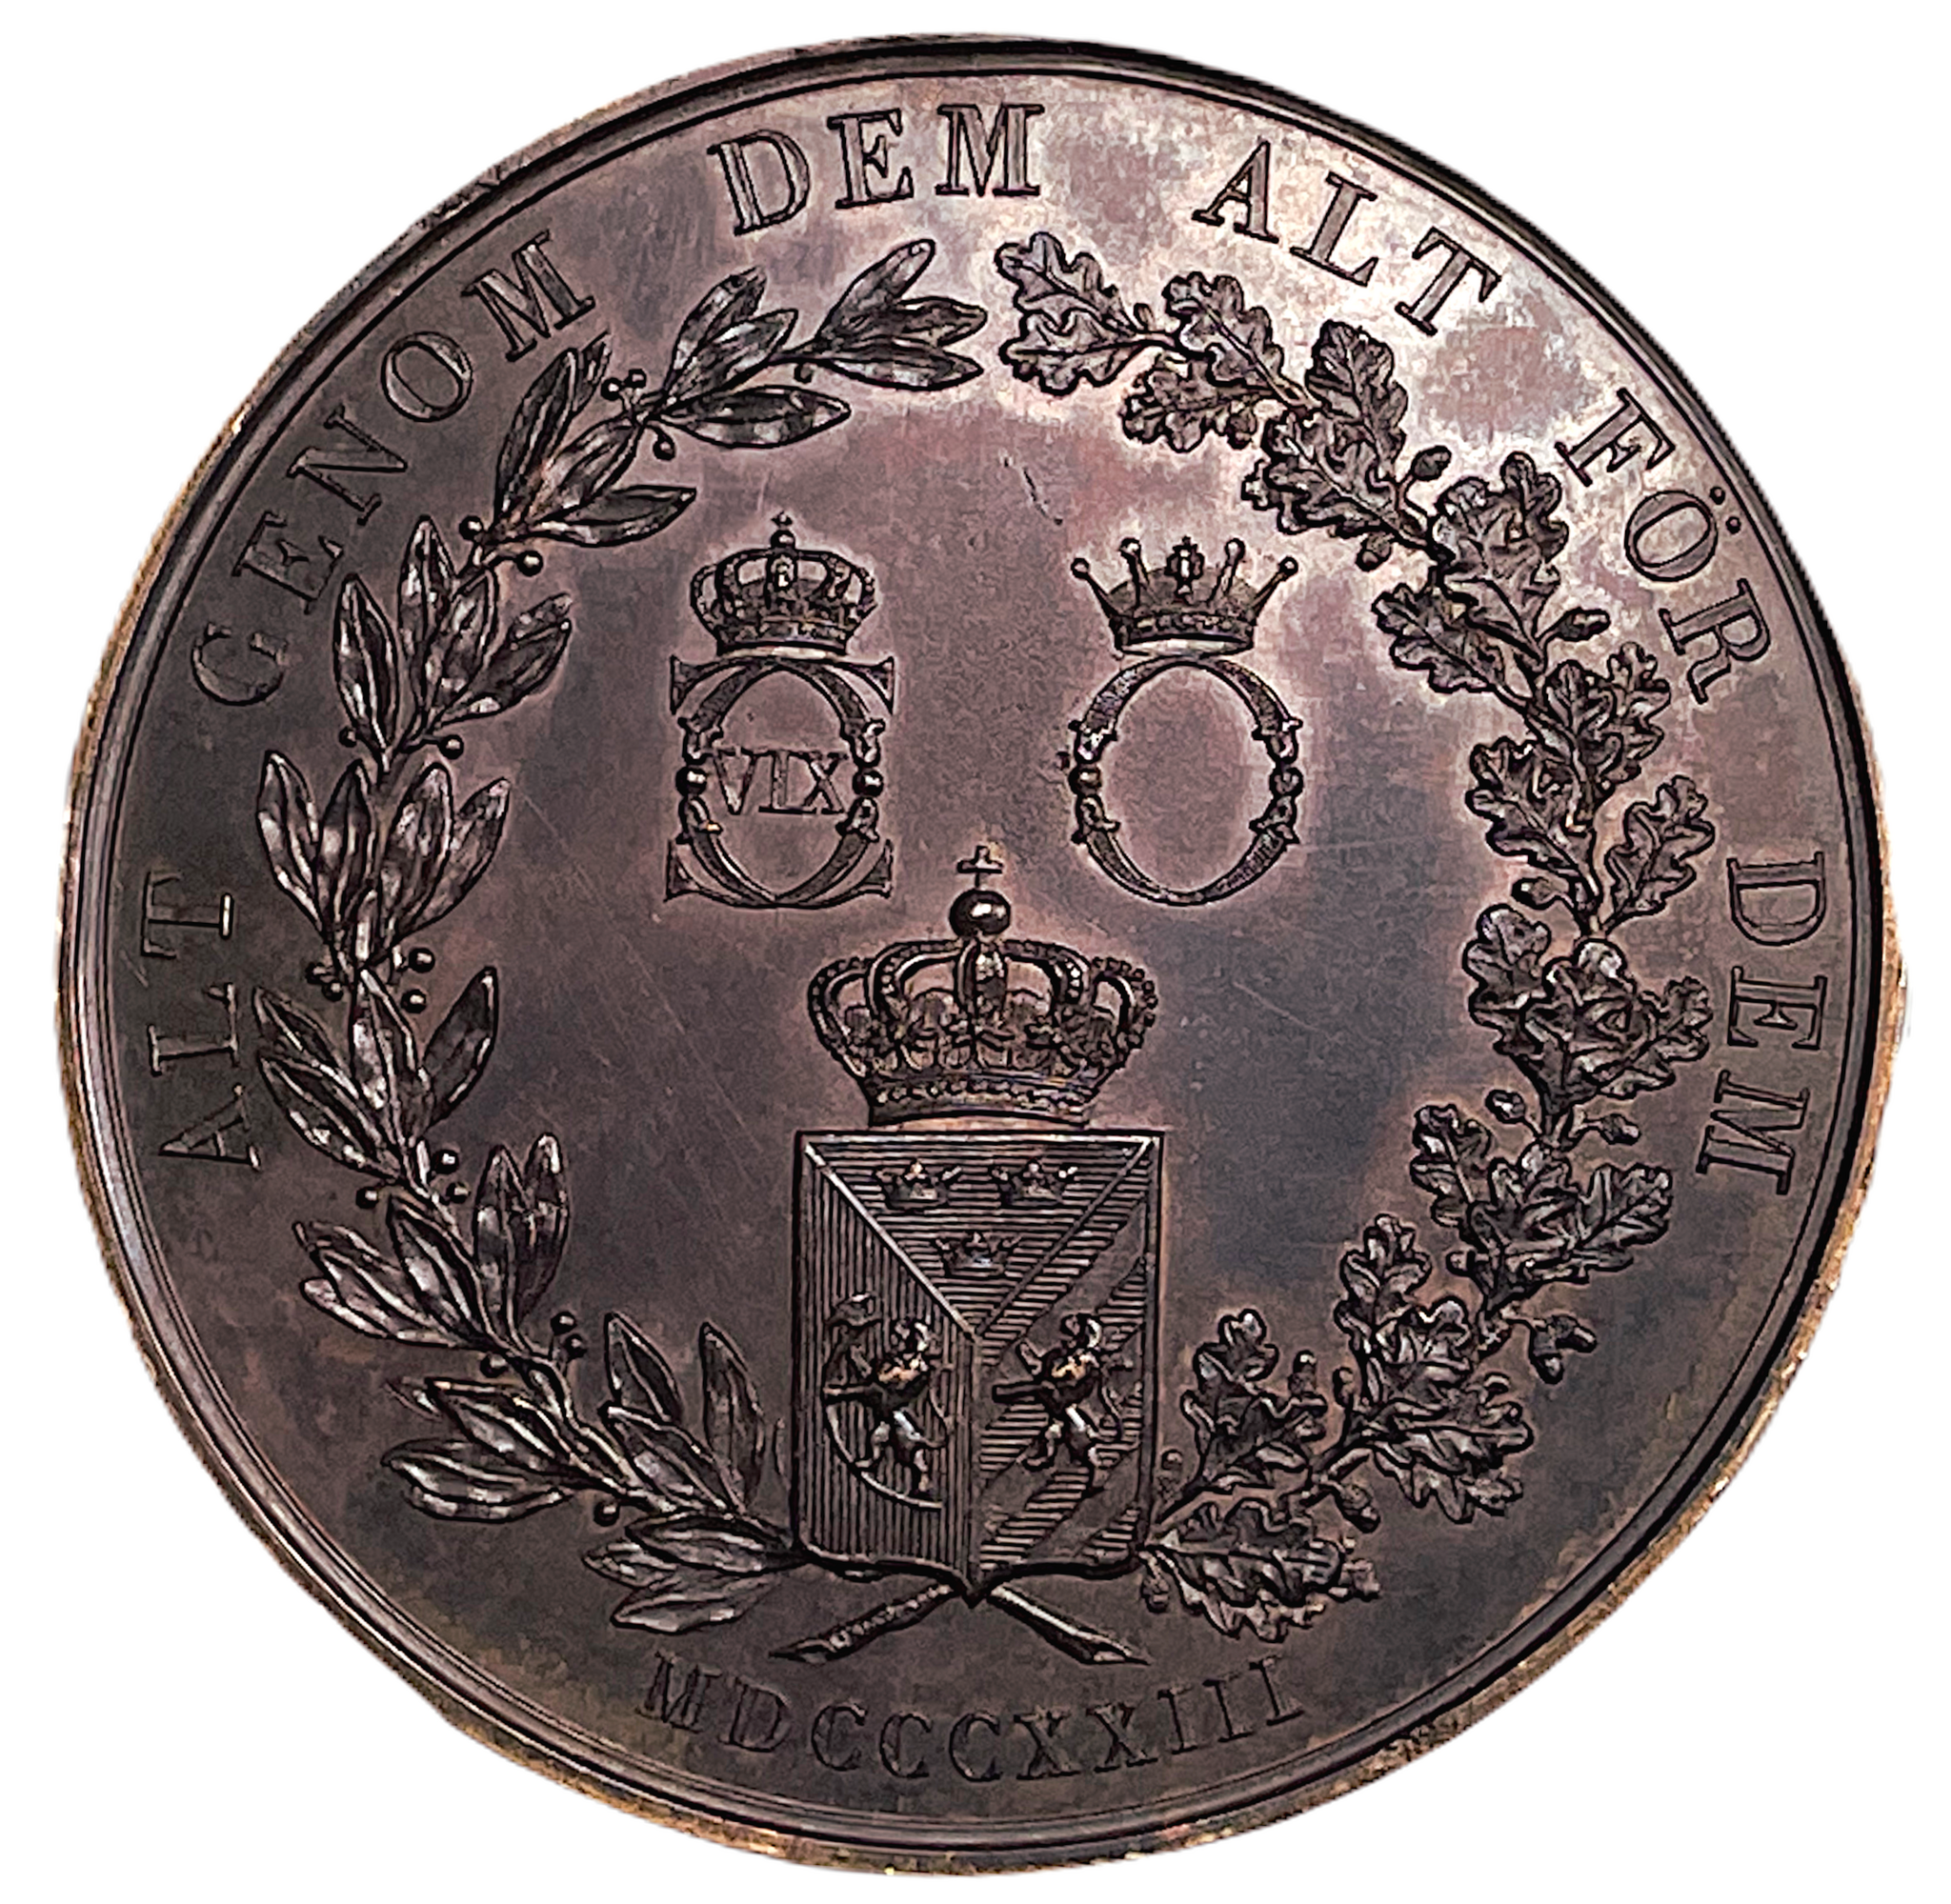 Drottning Desiderias ankomst till Sverige 1823 - Ett vackert exemplar